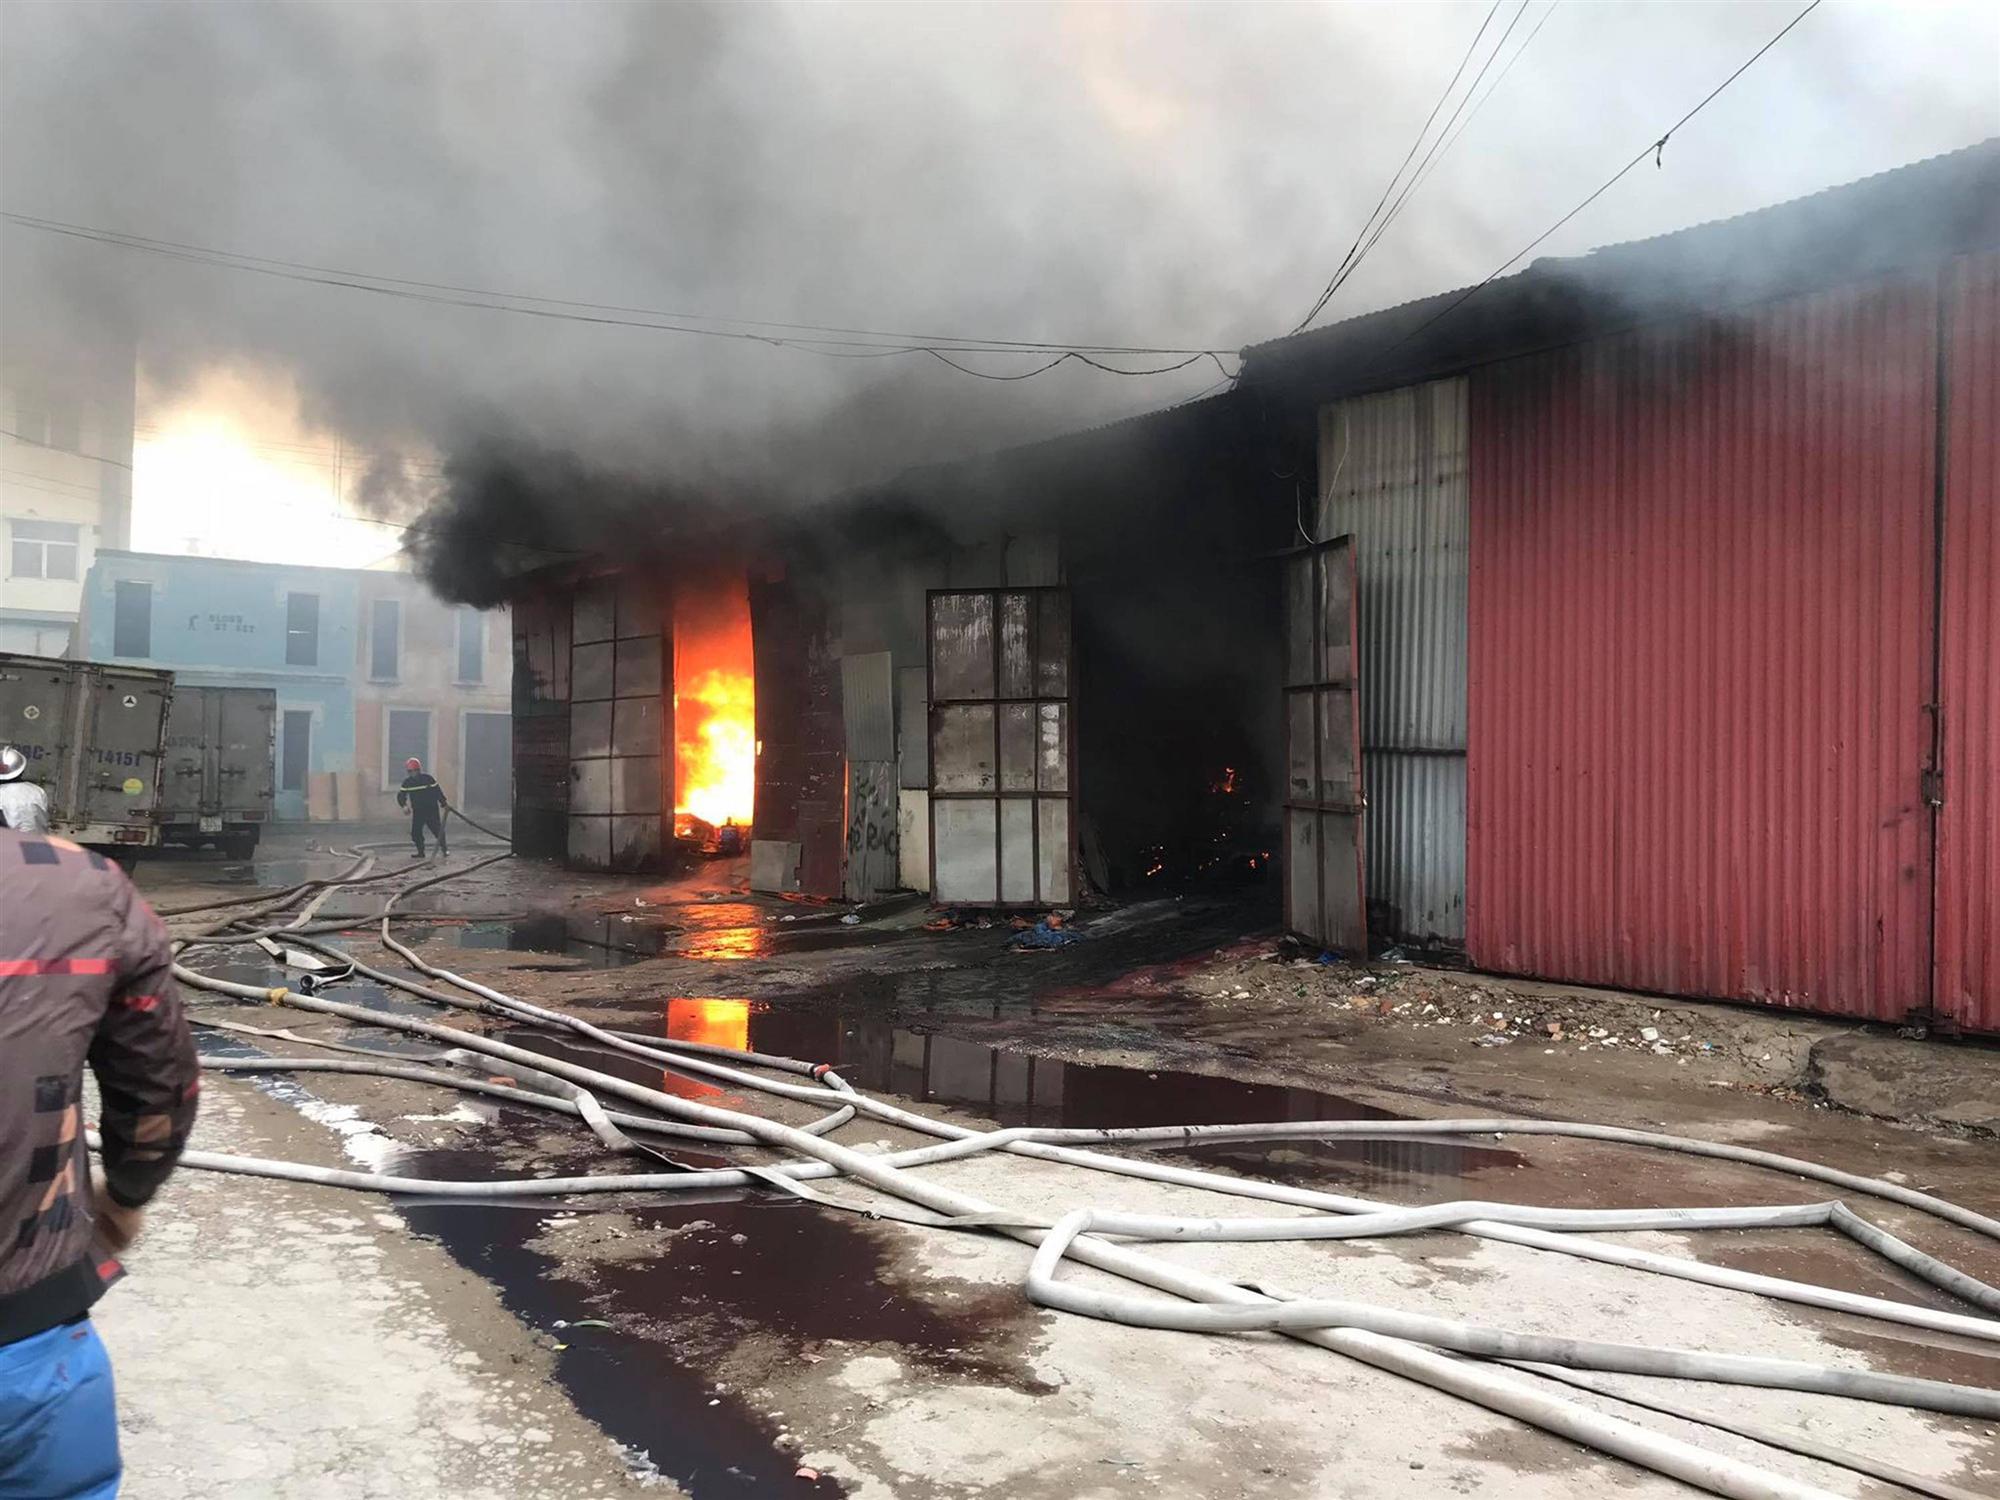 Hà Nội: Cháy khu nhà kho gần Bến xe Nước Ngầm, người dân cố gắng giải cứu chiếc xe hiệu Ford Ranger-5